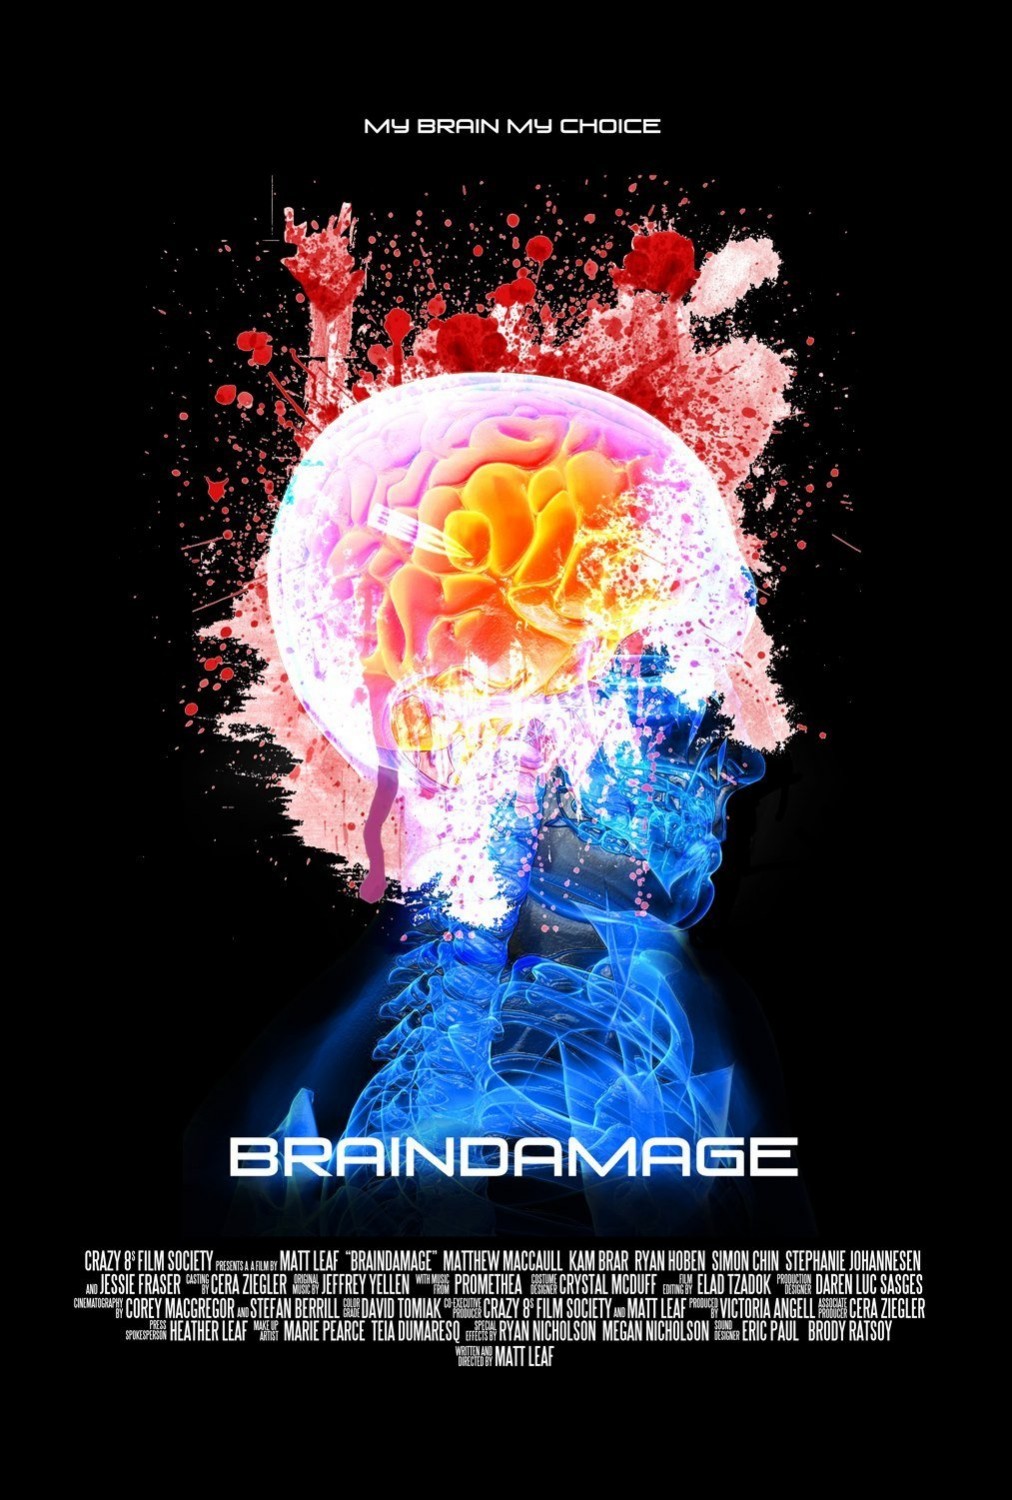 Extra Large Movie Poster Image for Braindamage